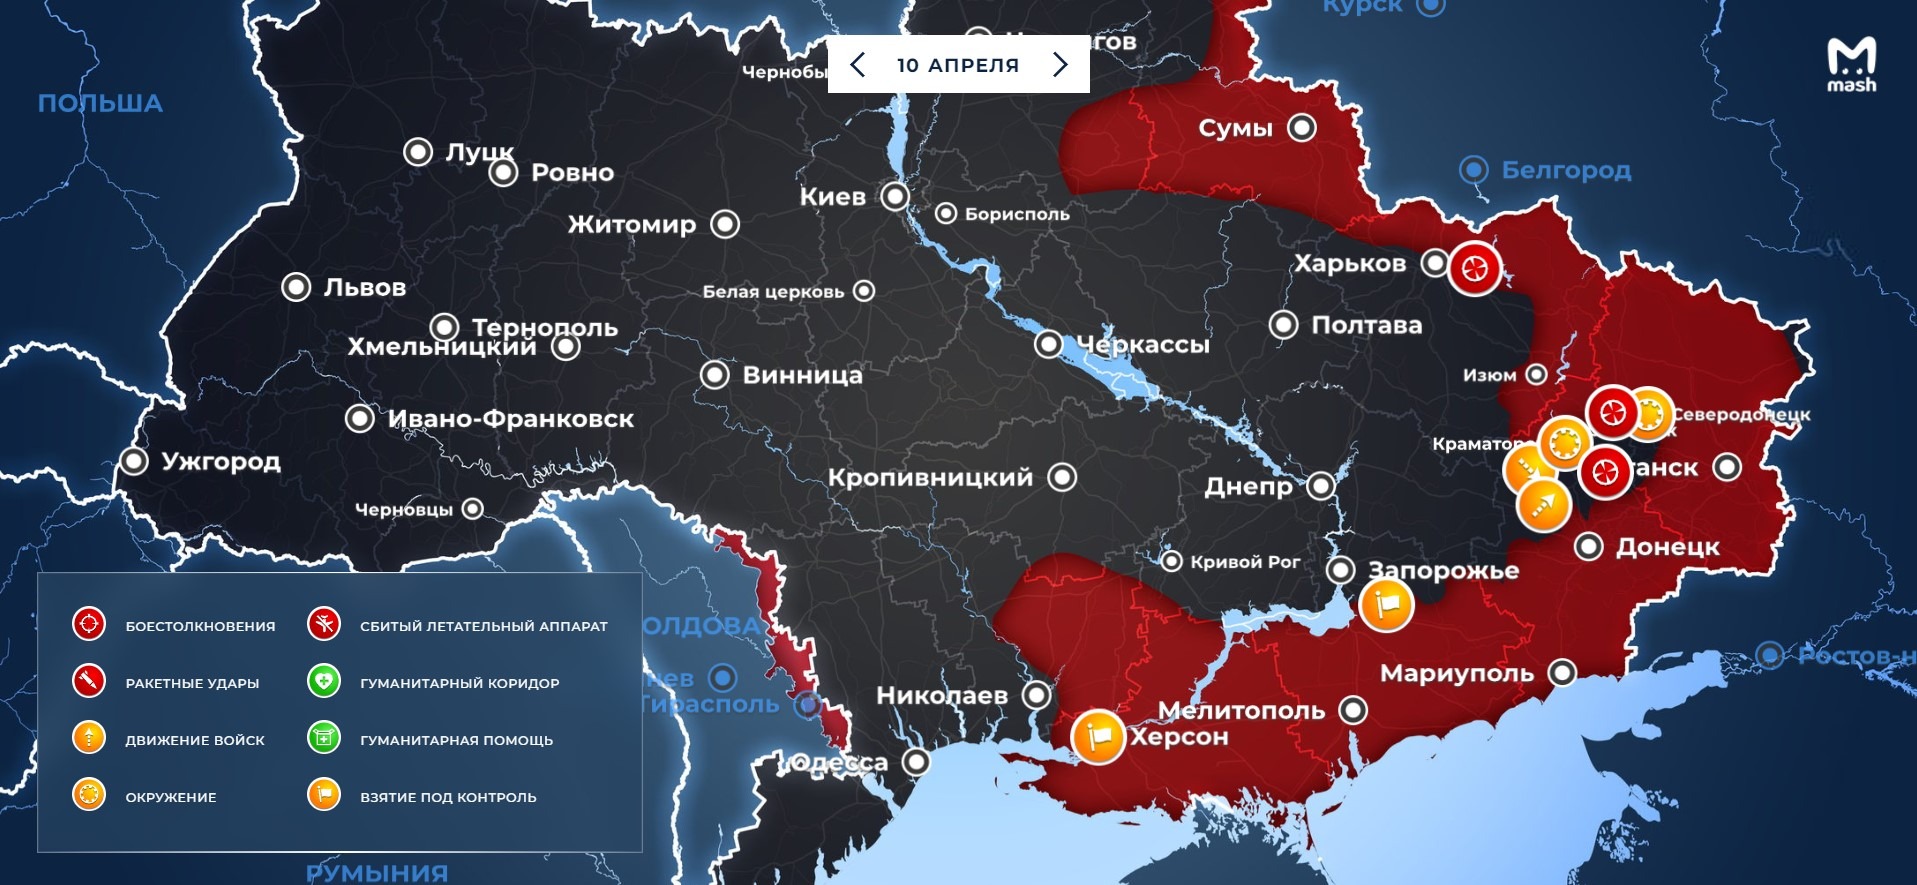 Скорое наступление России на все города Украины пообещал Рамзан Кадыров: последние новости из Украины на 11 апреля